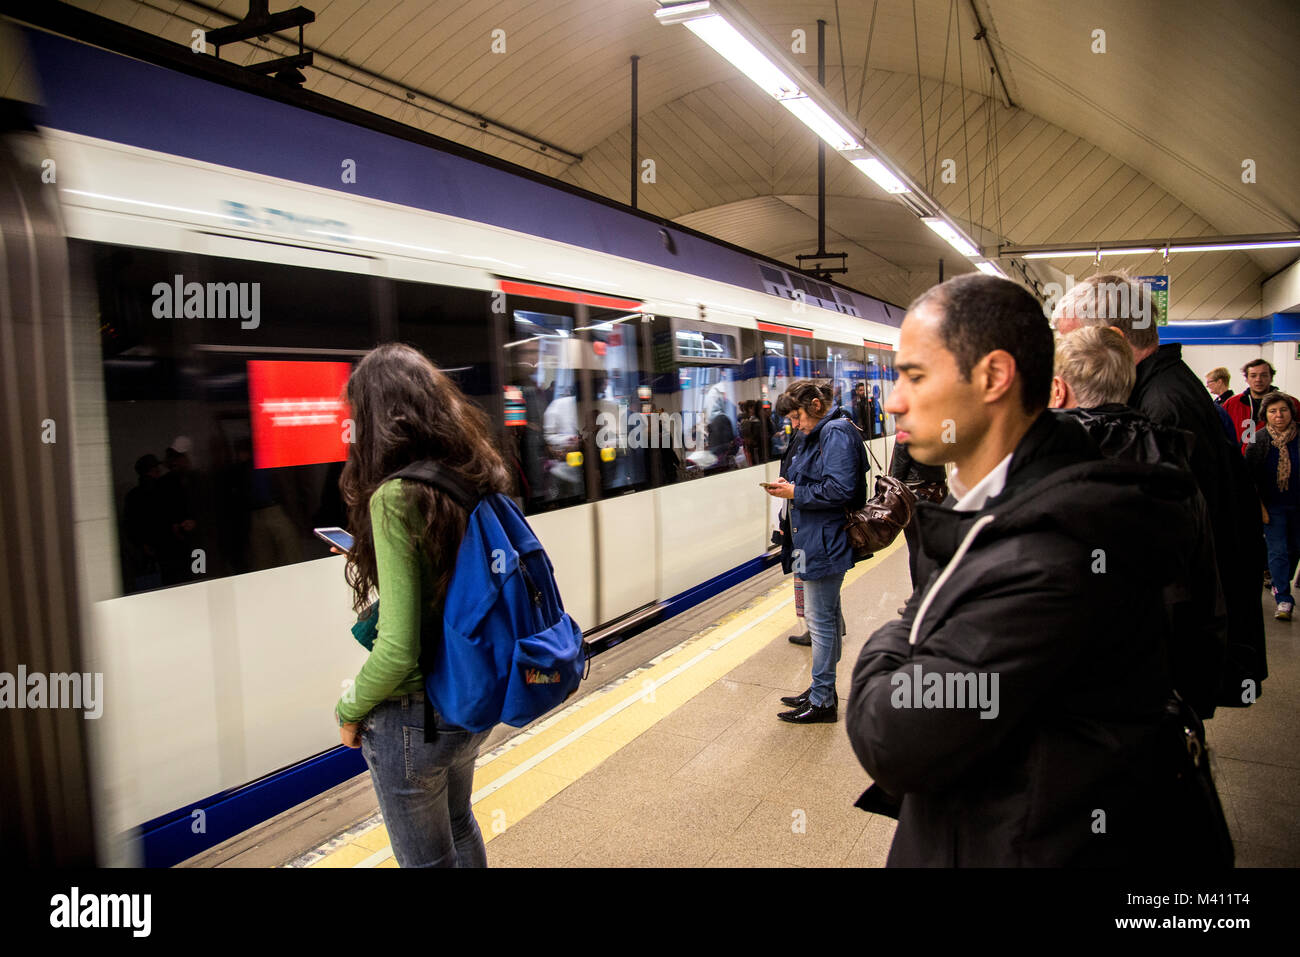 Madrid underground train with passengers Stock Photo